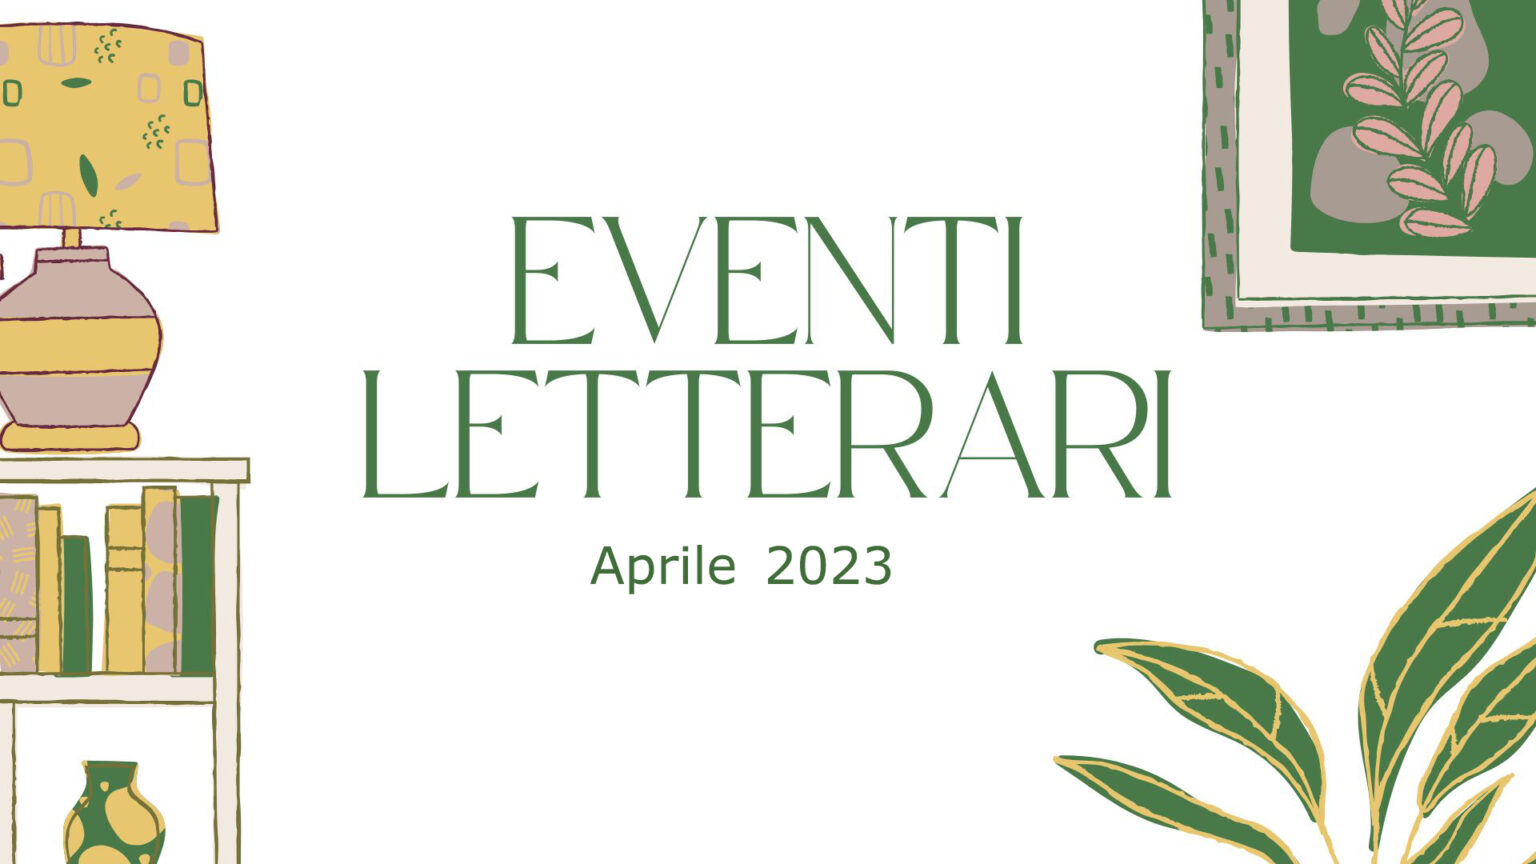 Eventi letterari nel mese di aprile 2023